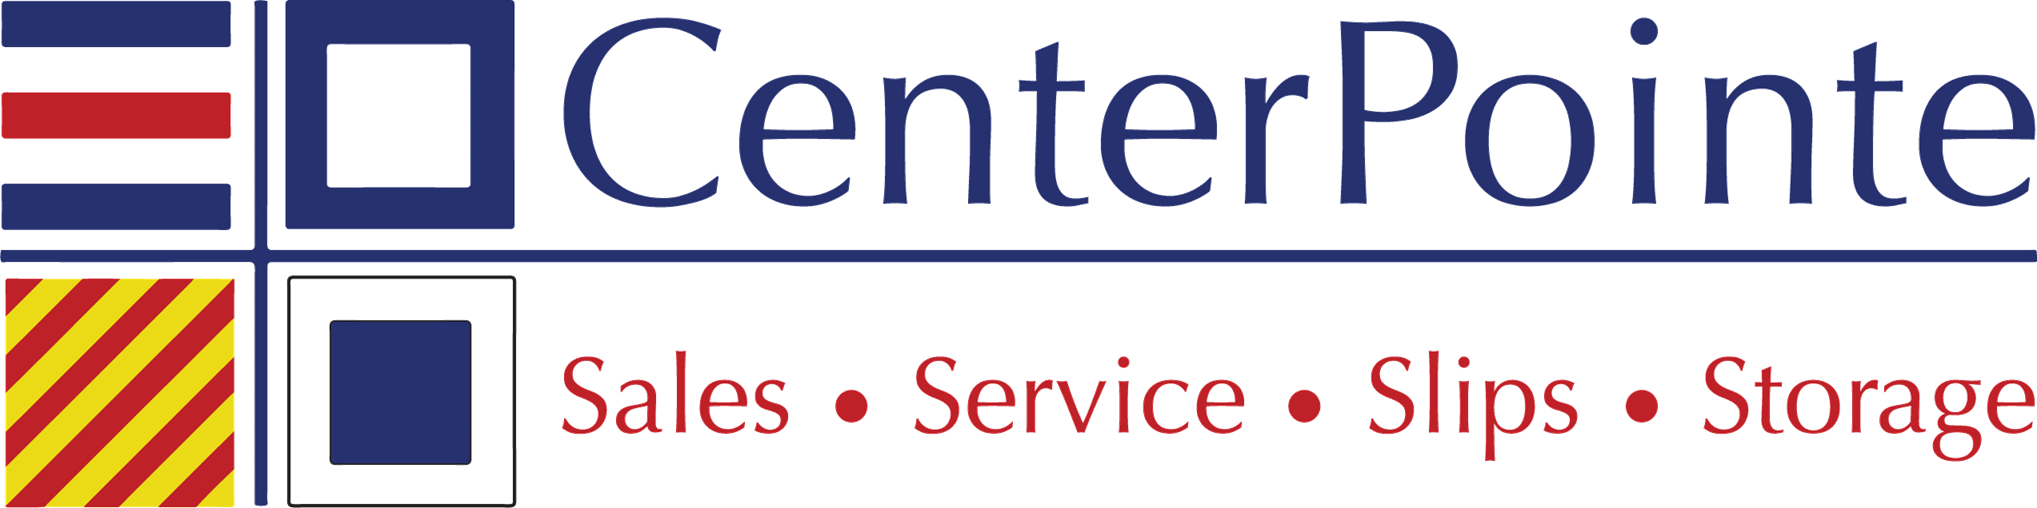 CenterPointe Yacht Services - Sturgeon Bay logo